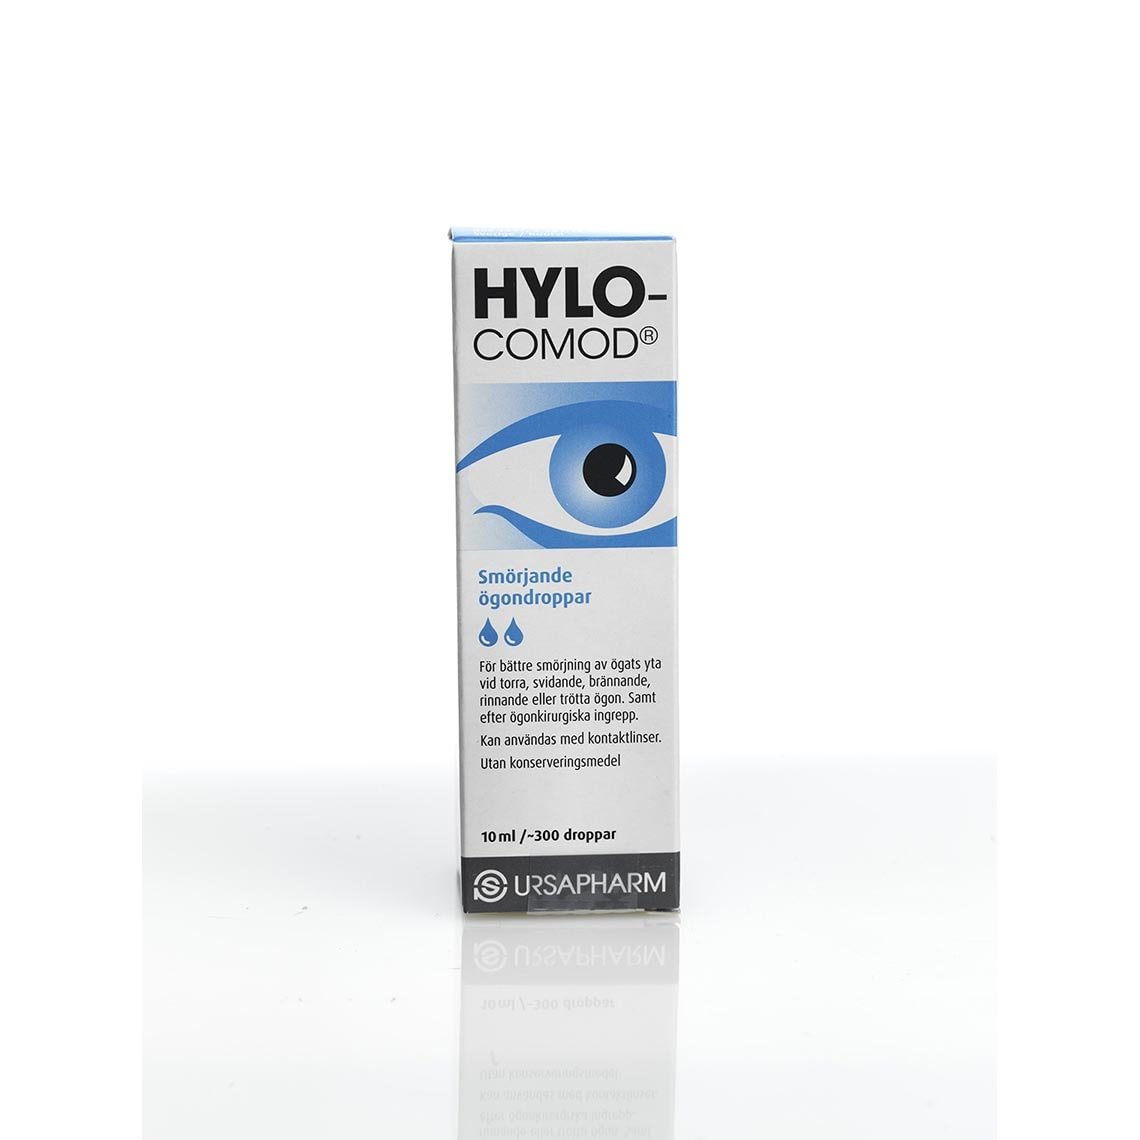 Hylo-Comod Smörjande ögondroppar 10 ml